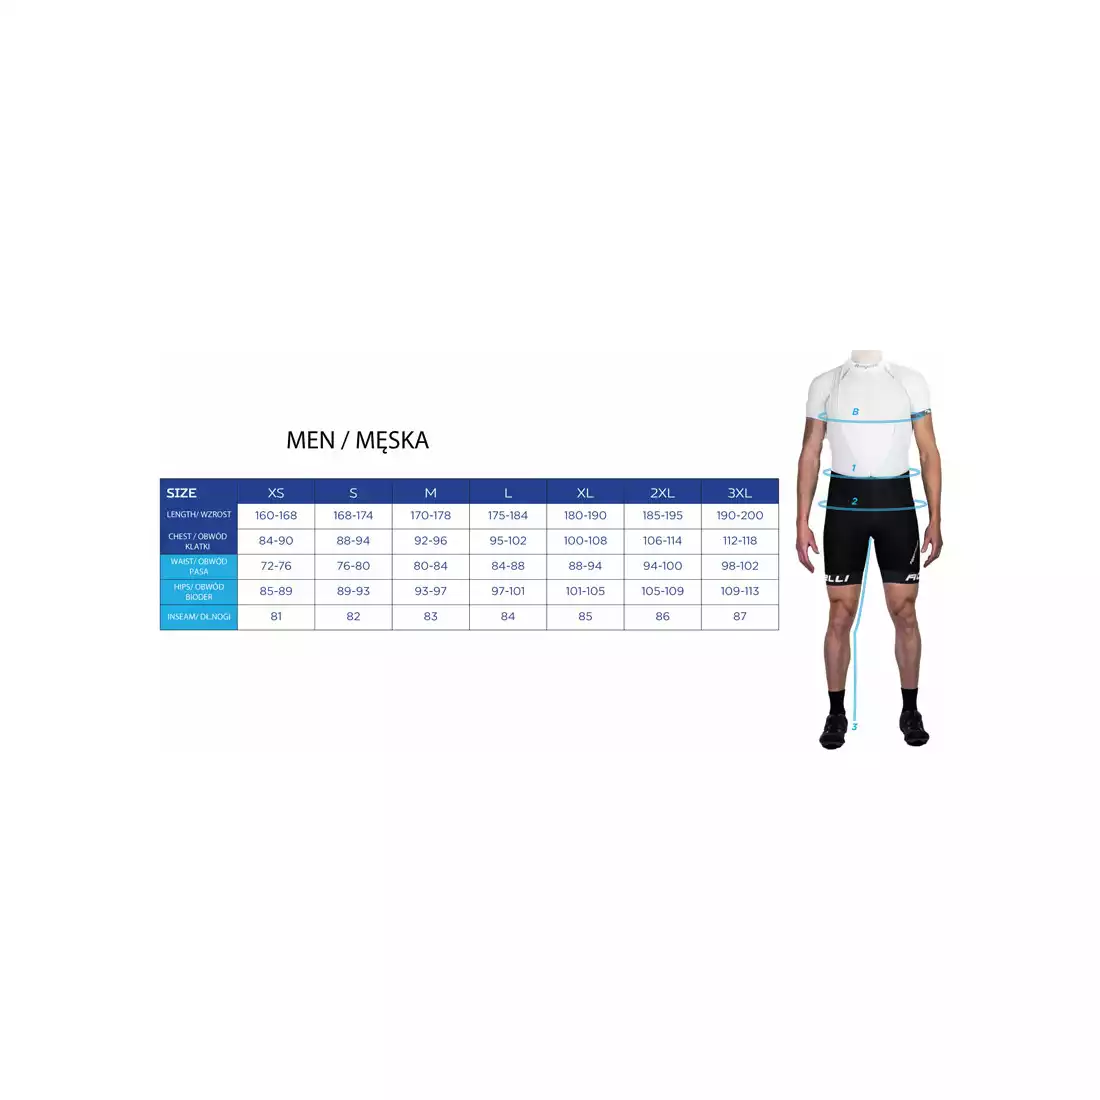 ROGELLI RUN STRUCTURE 830.241 - męska koszulka, bezrękawnik do biegania, niebiesko-pomarańczowa